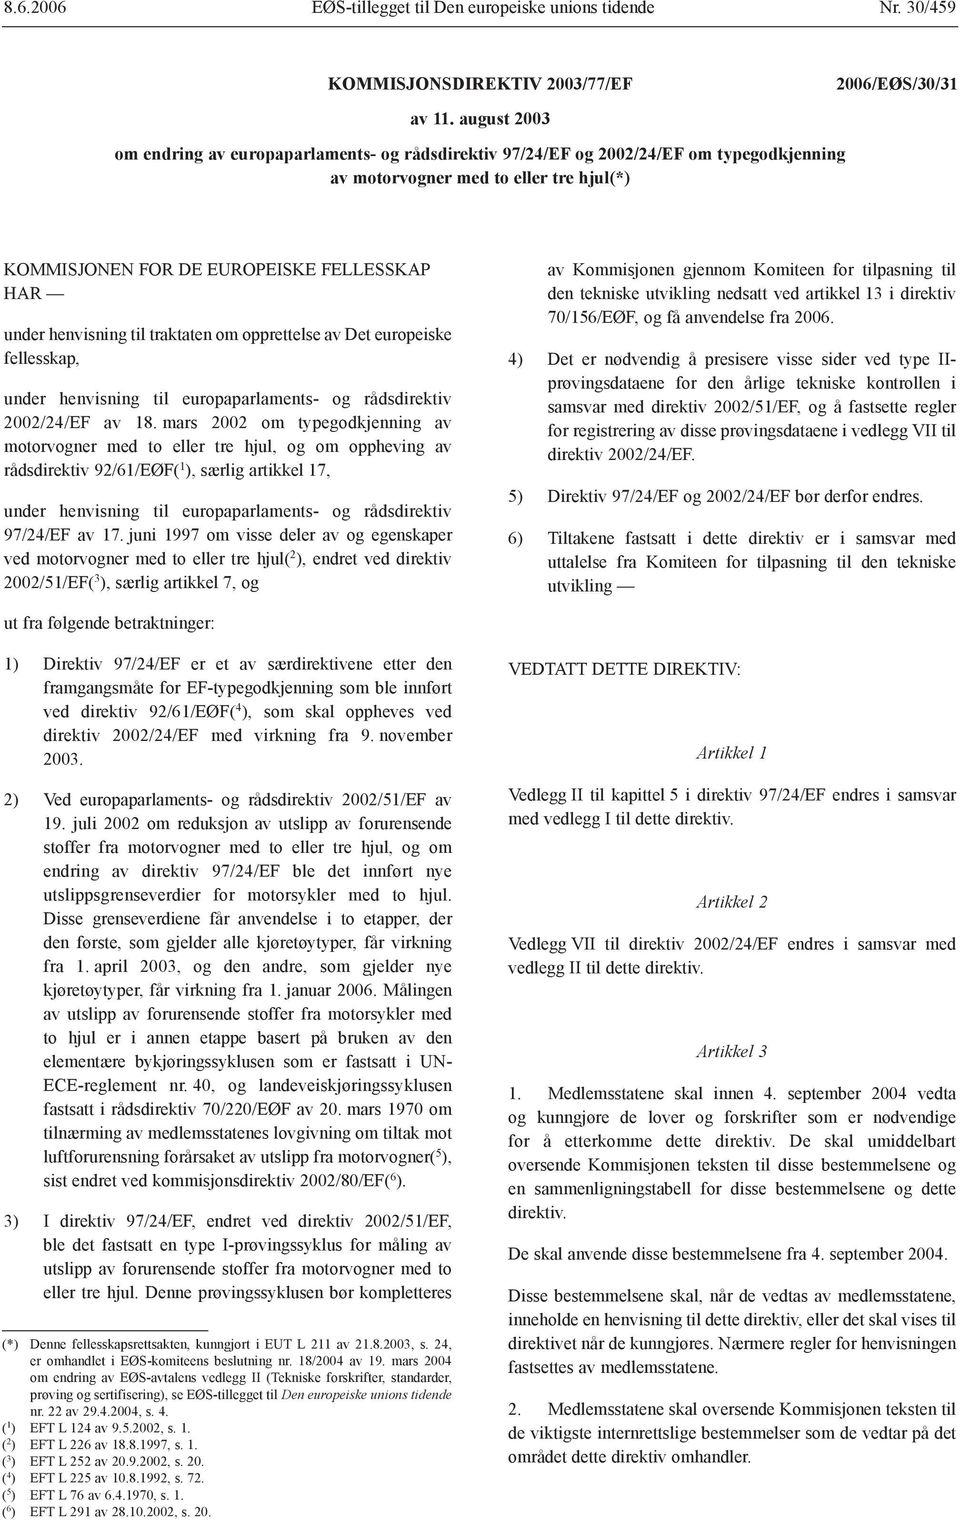 henvisning til traktaten om opprettelse av Det europeiske fellesskap, under henvisning til europaparlaments- og rådsdirektiv 2002/24/EF av 18.